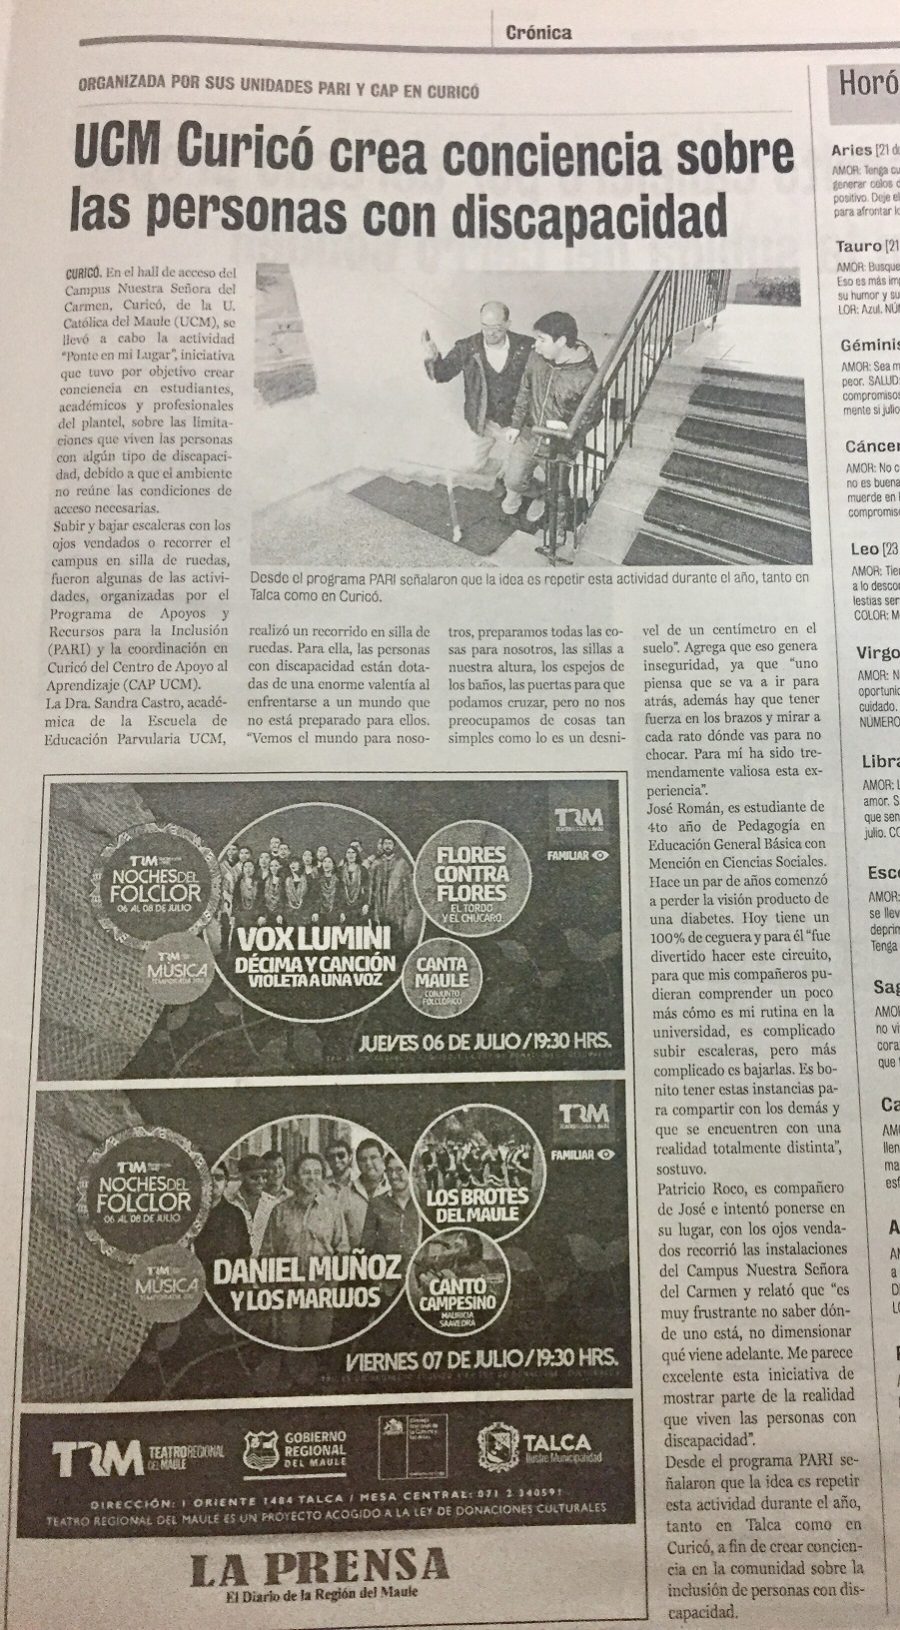 04 de julio en Diario La Prensa: “UCM Curicó crea conciencia sobre las personas con discapacidad”